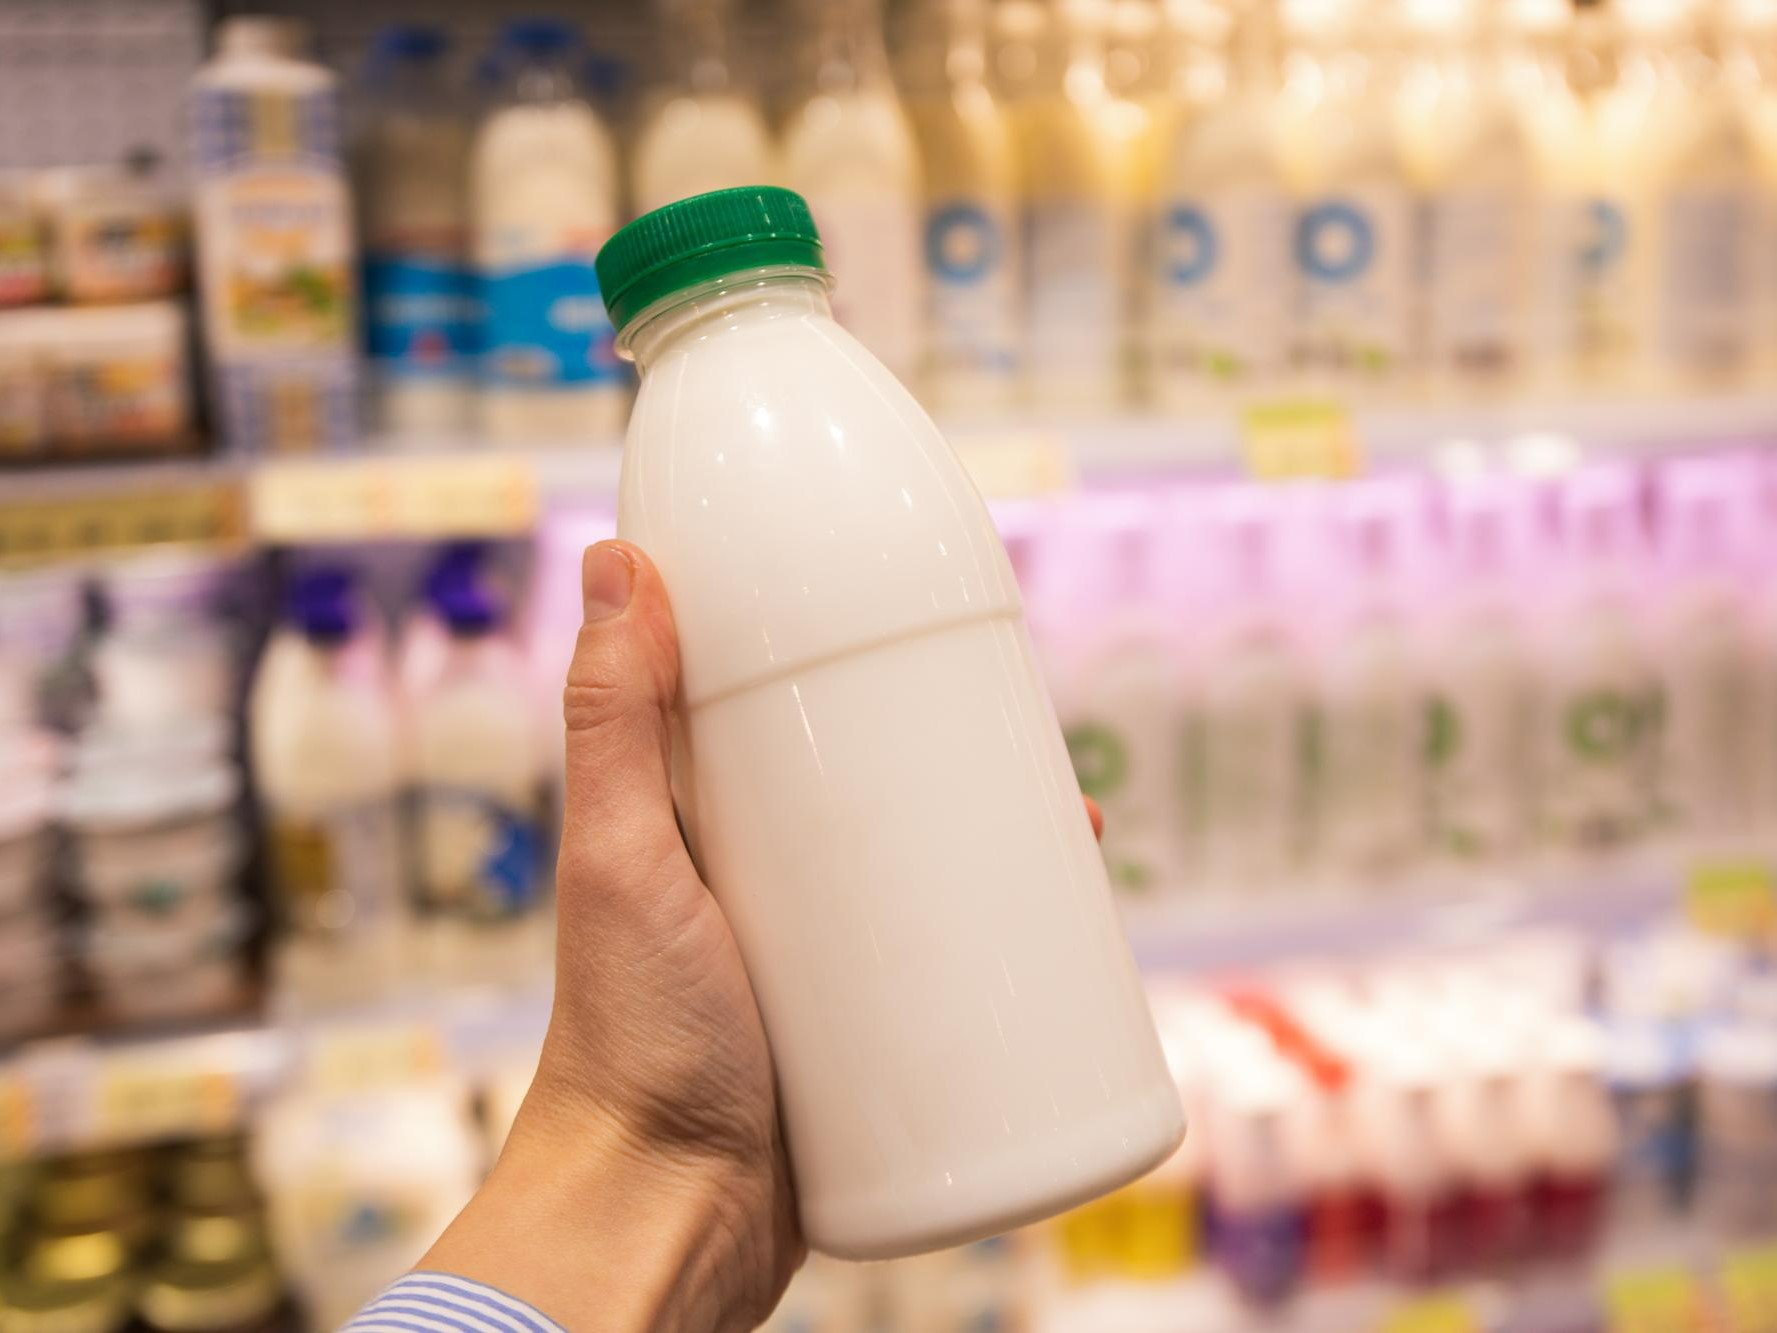 Эксперимент по учету молочной продукции партиями предлагается провести с 1 июня